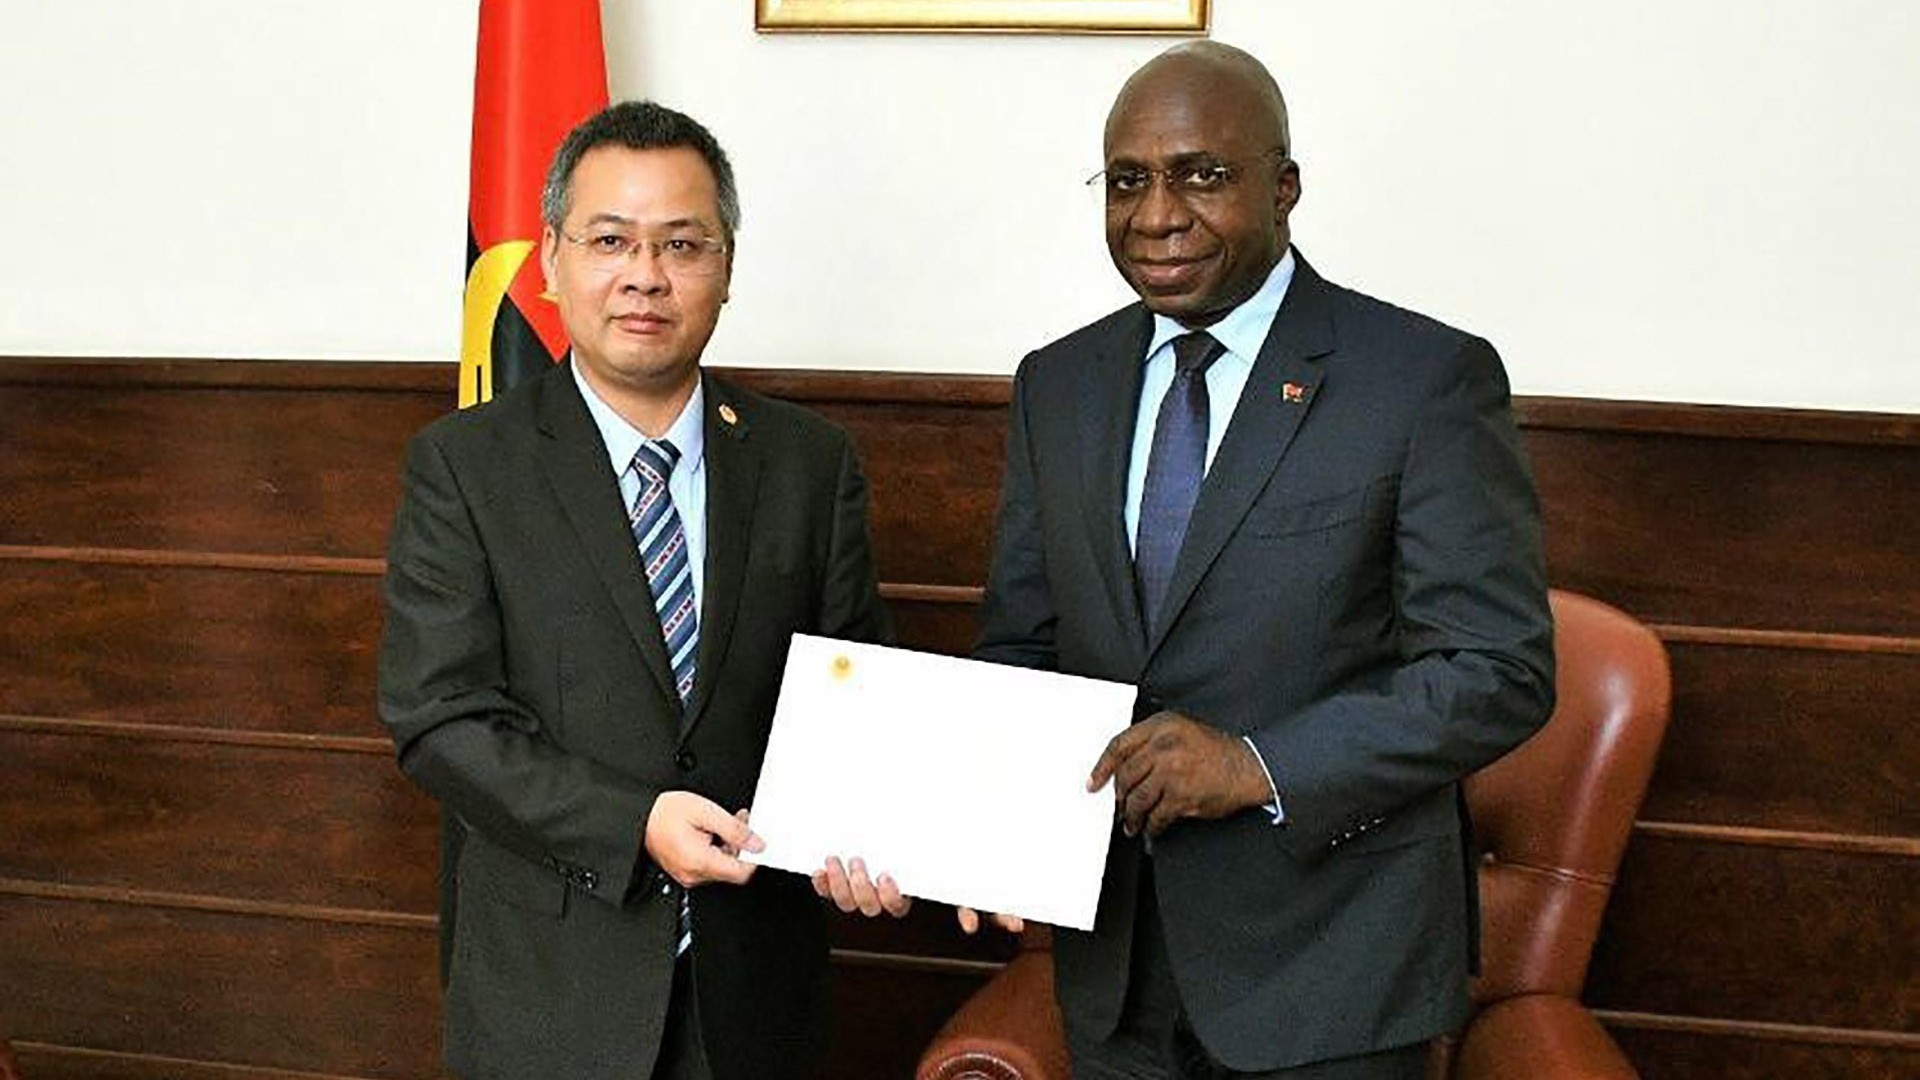 Đại sứ Dương Chính Chức trình bản sao Thư ủy nhiệm lên Bộ trưởng Ngoại giao Angola